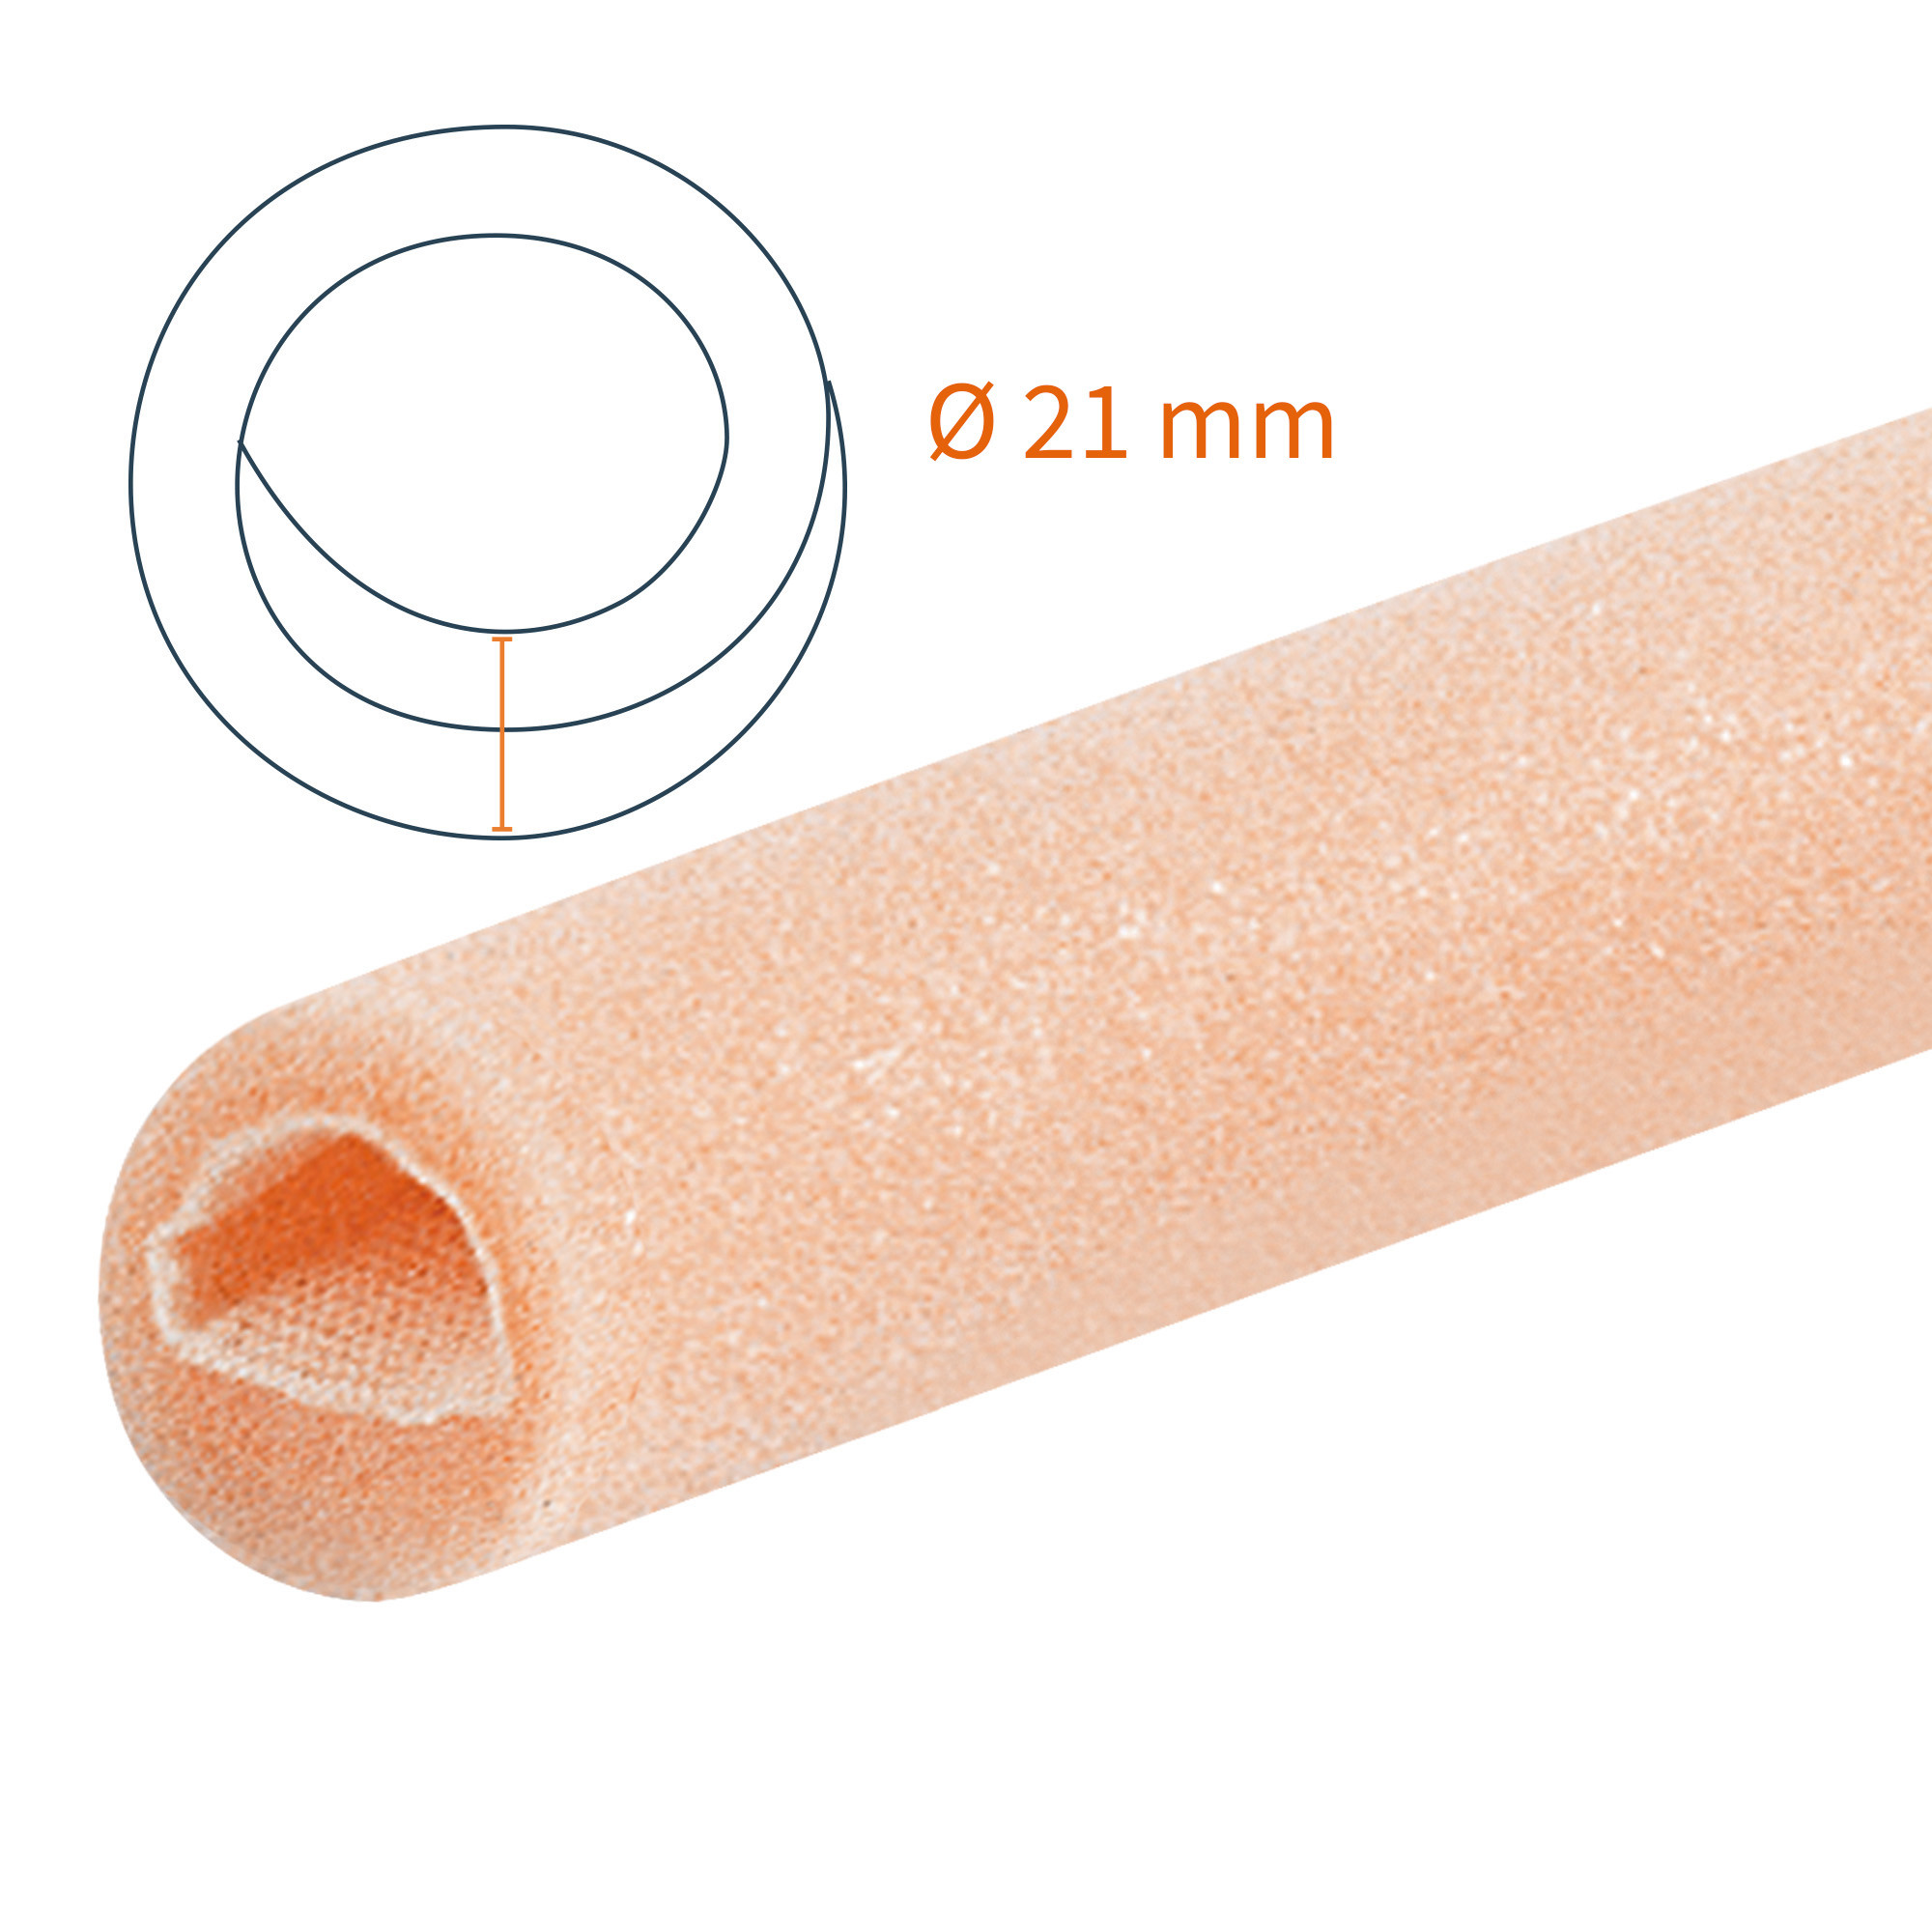 Protezione tubolare a doppio strato Tubifoam 21 mm CX 12 pz